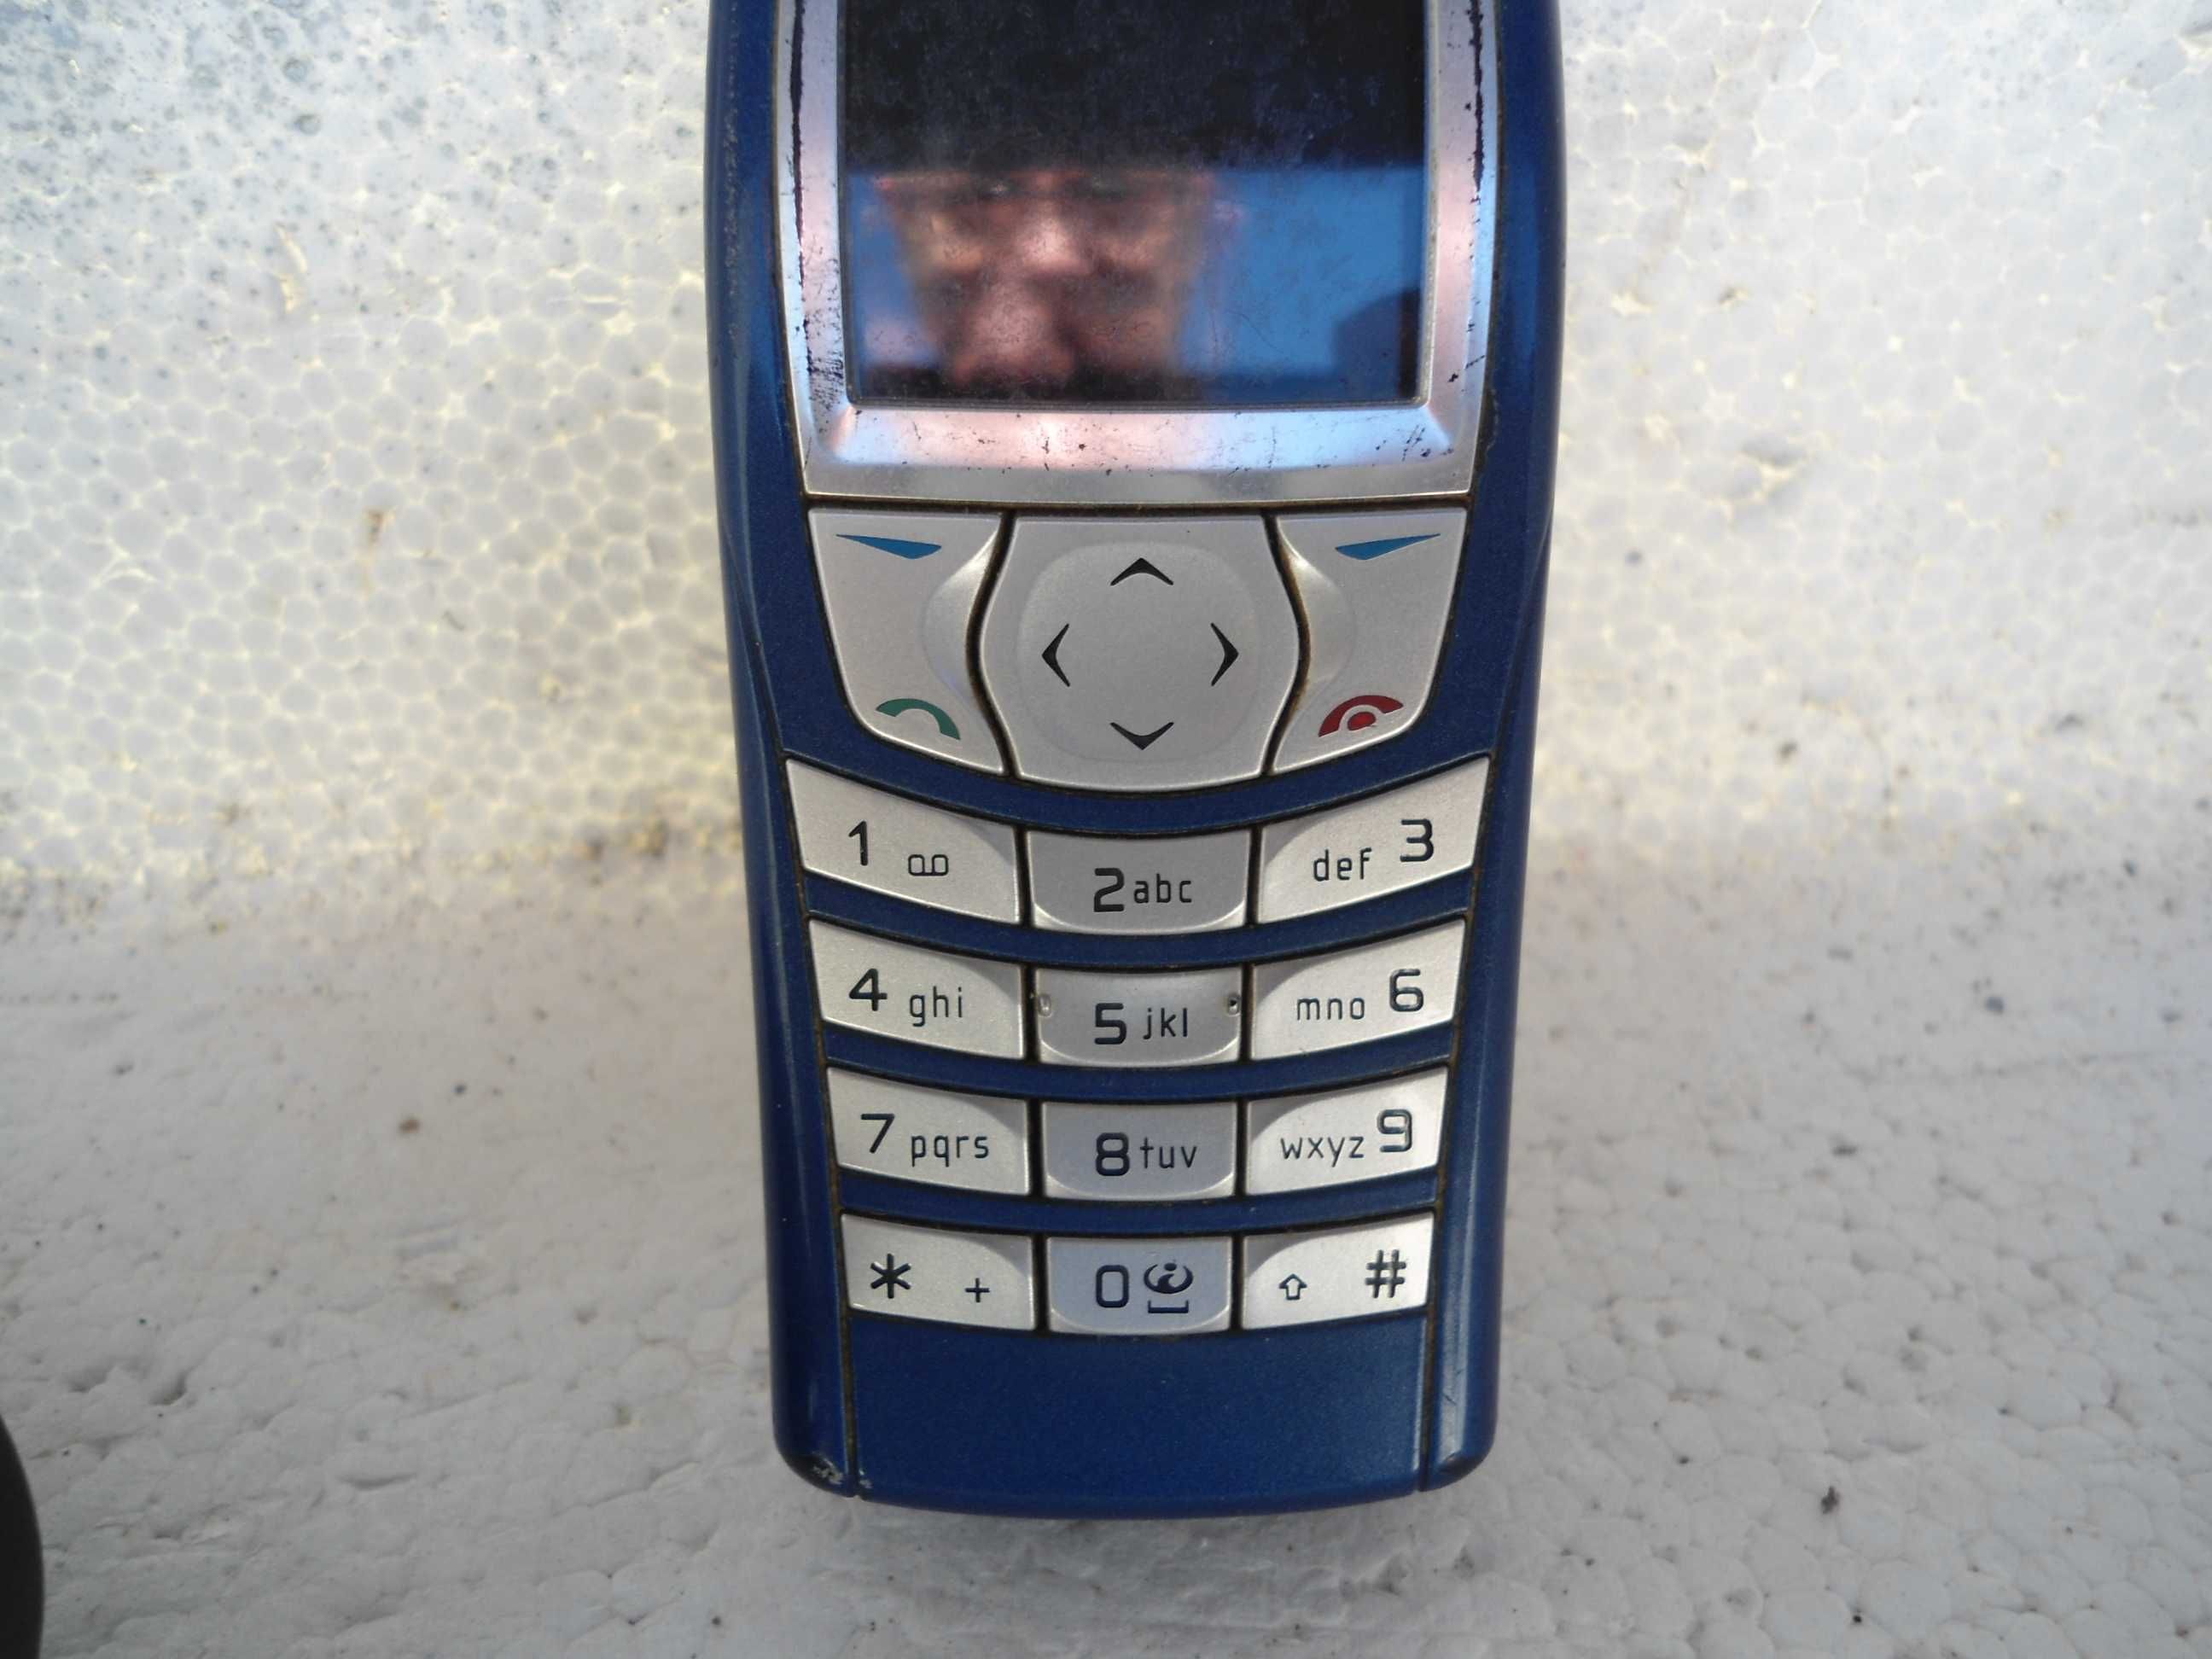 Nokia 6610 i - Telemovel para colecionadores